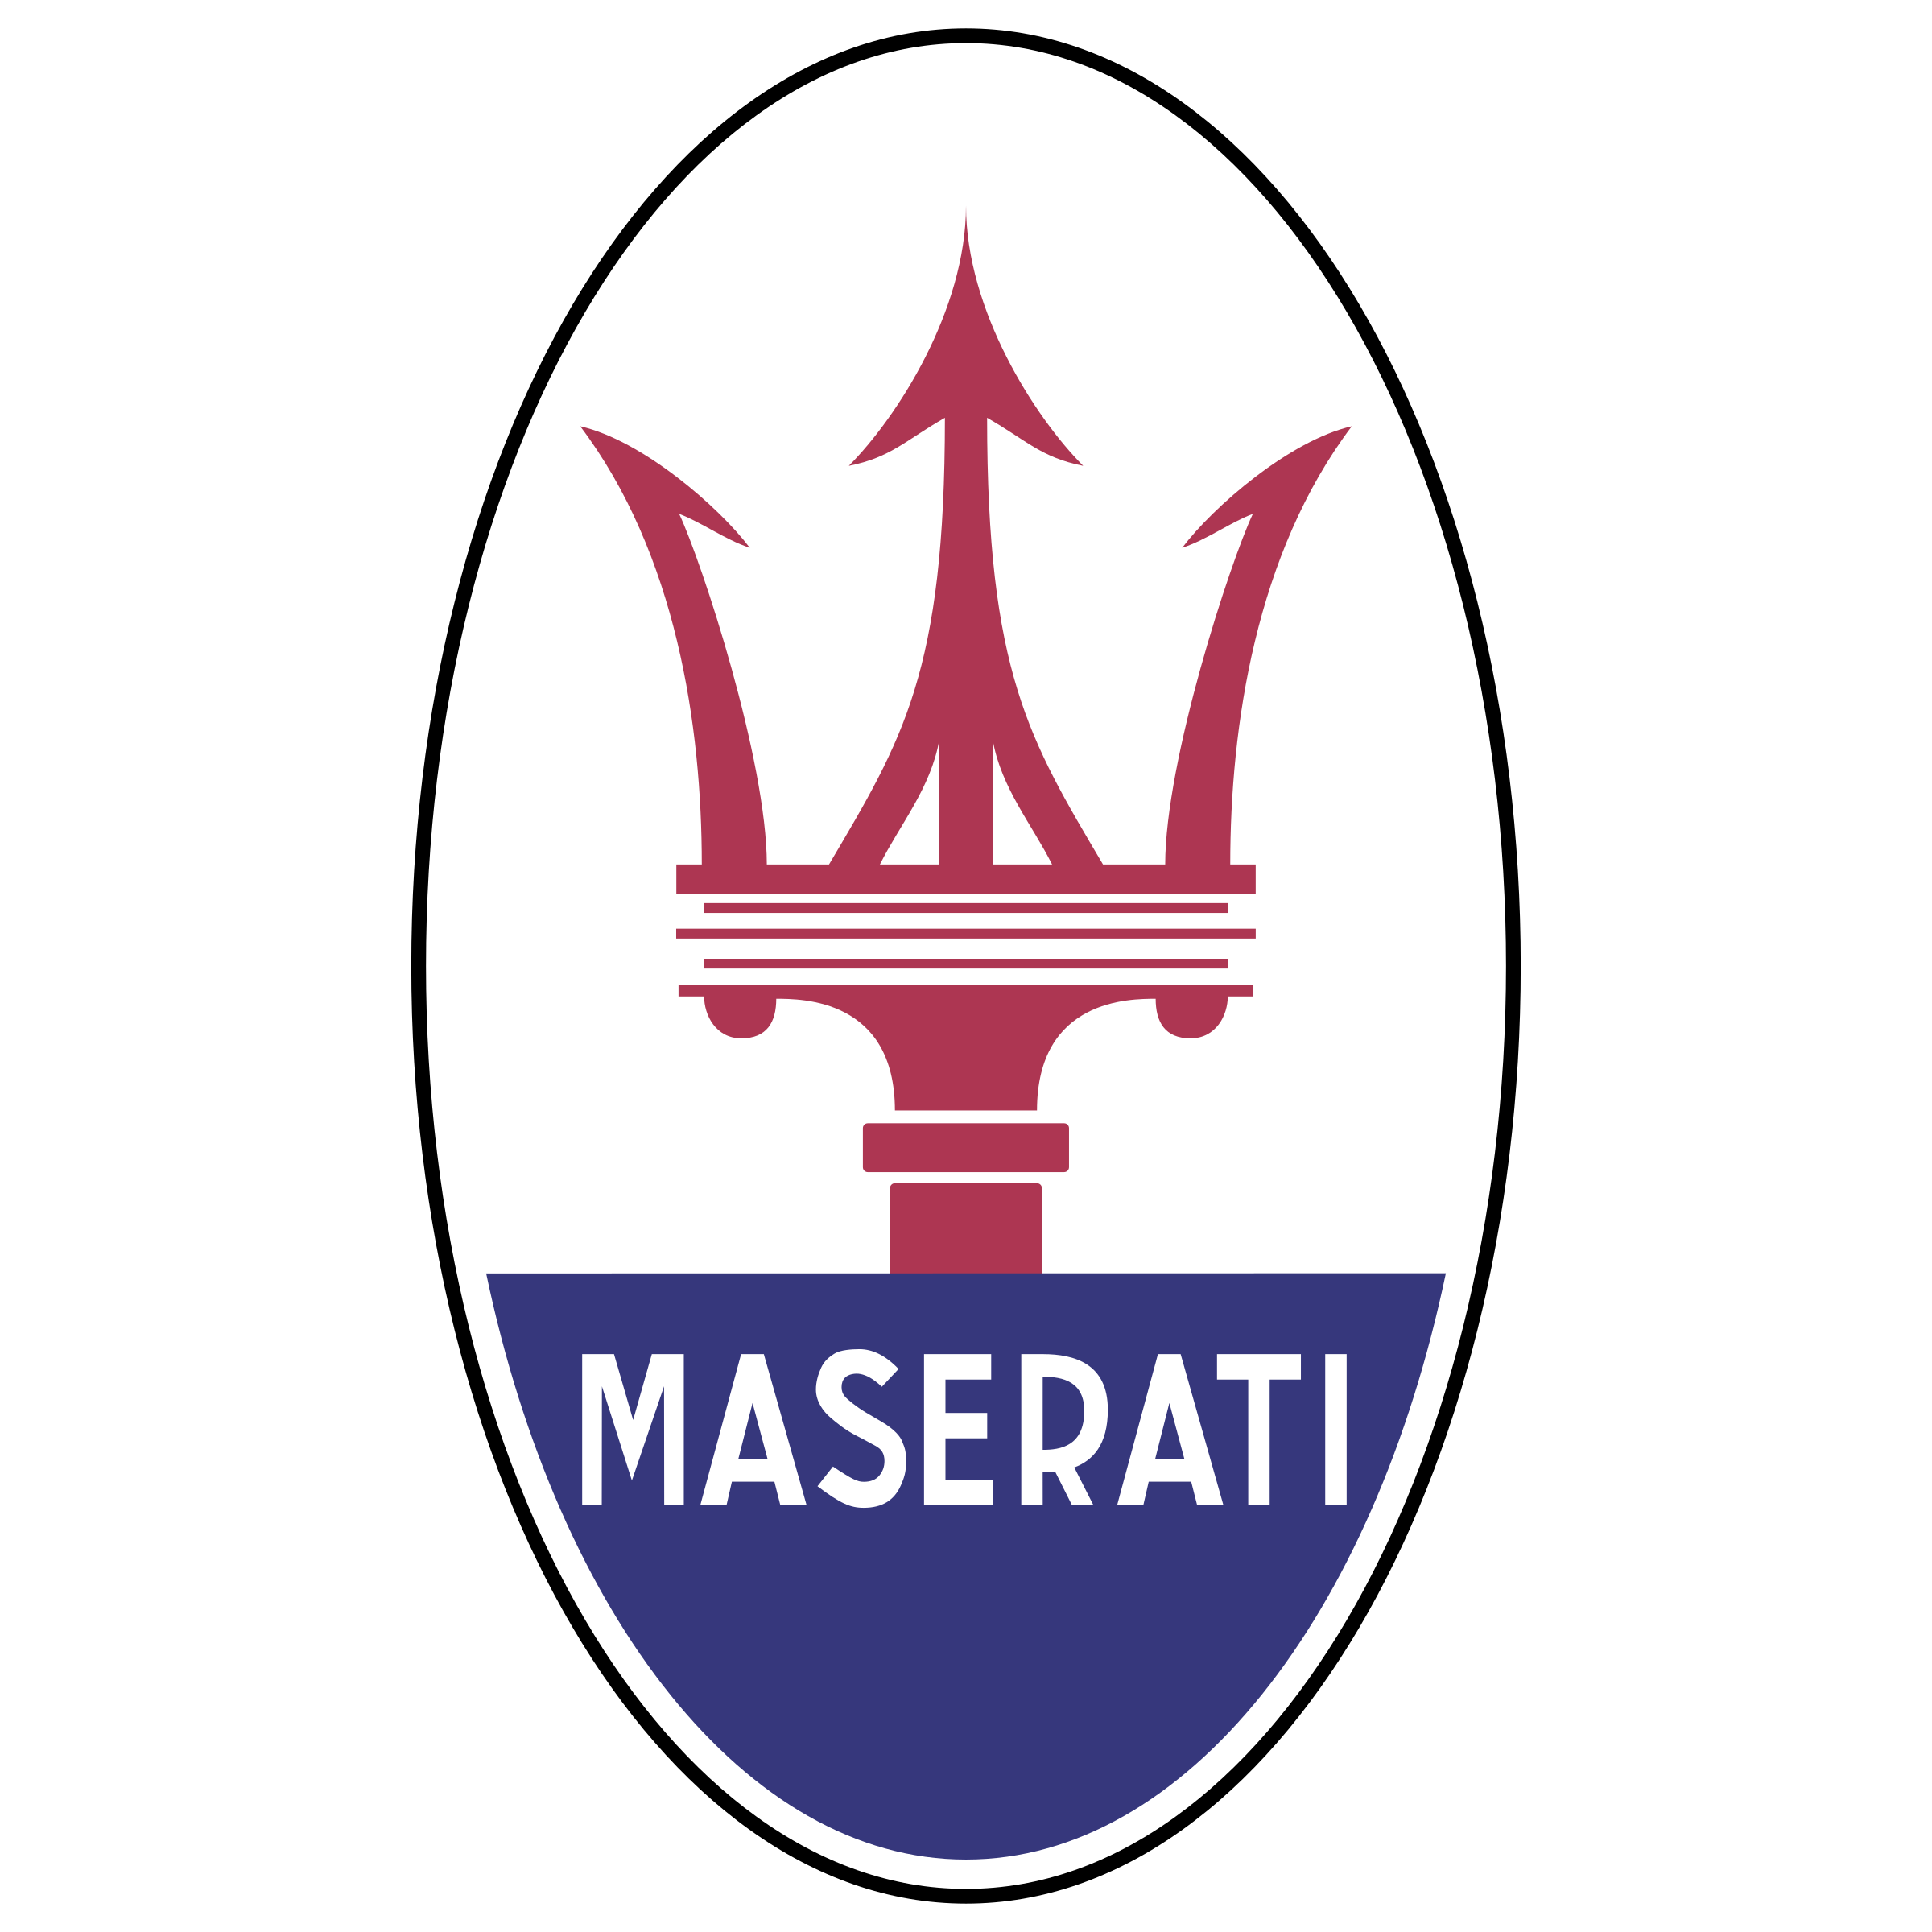 Maserati Symbol Transparent Image